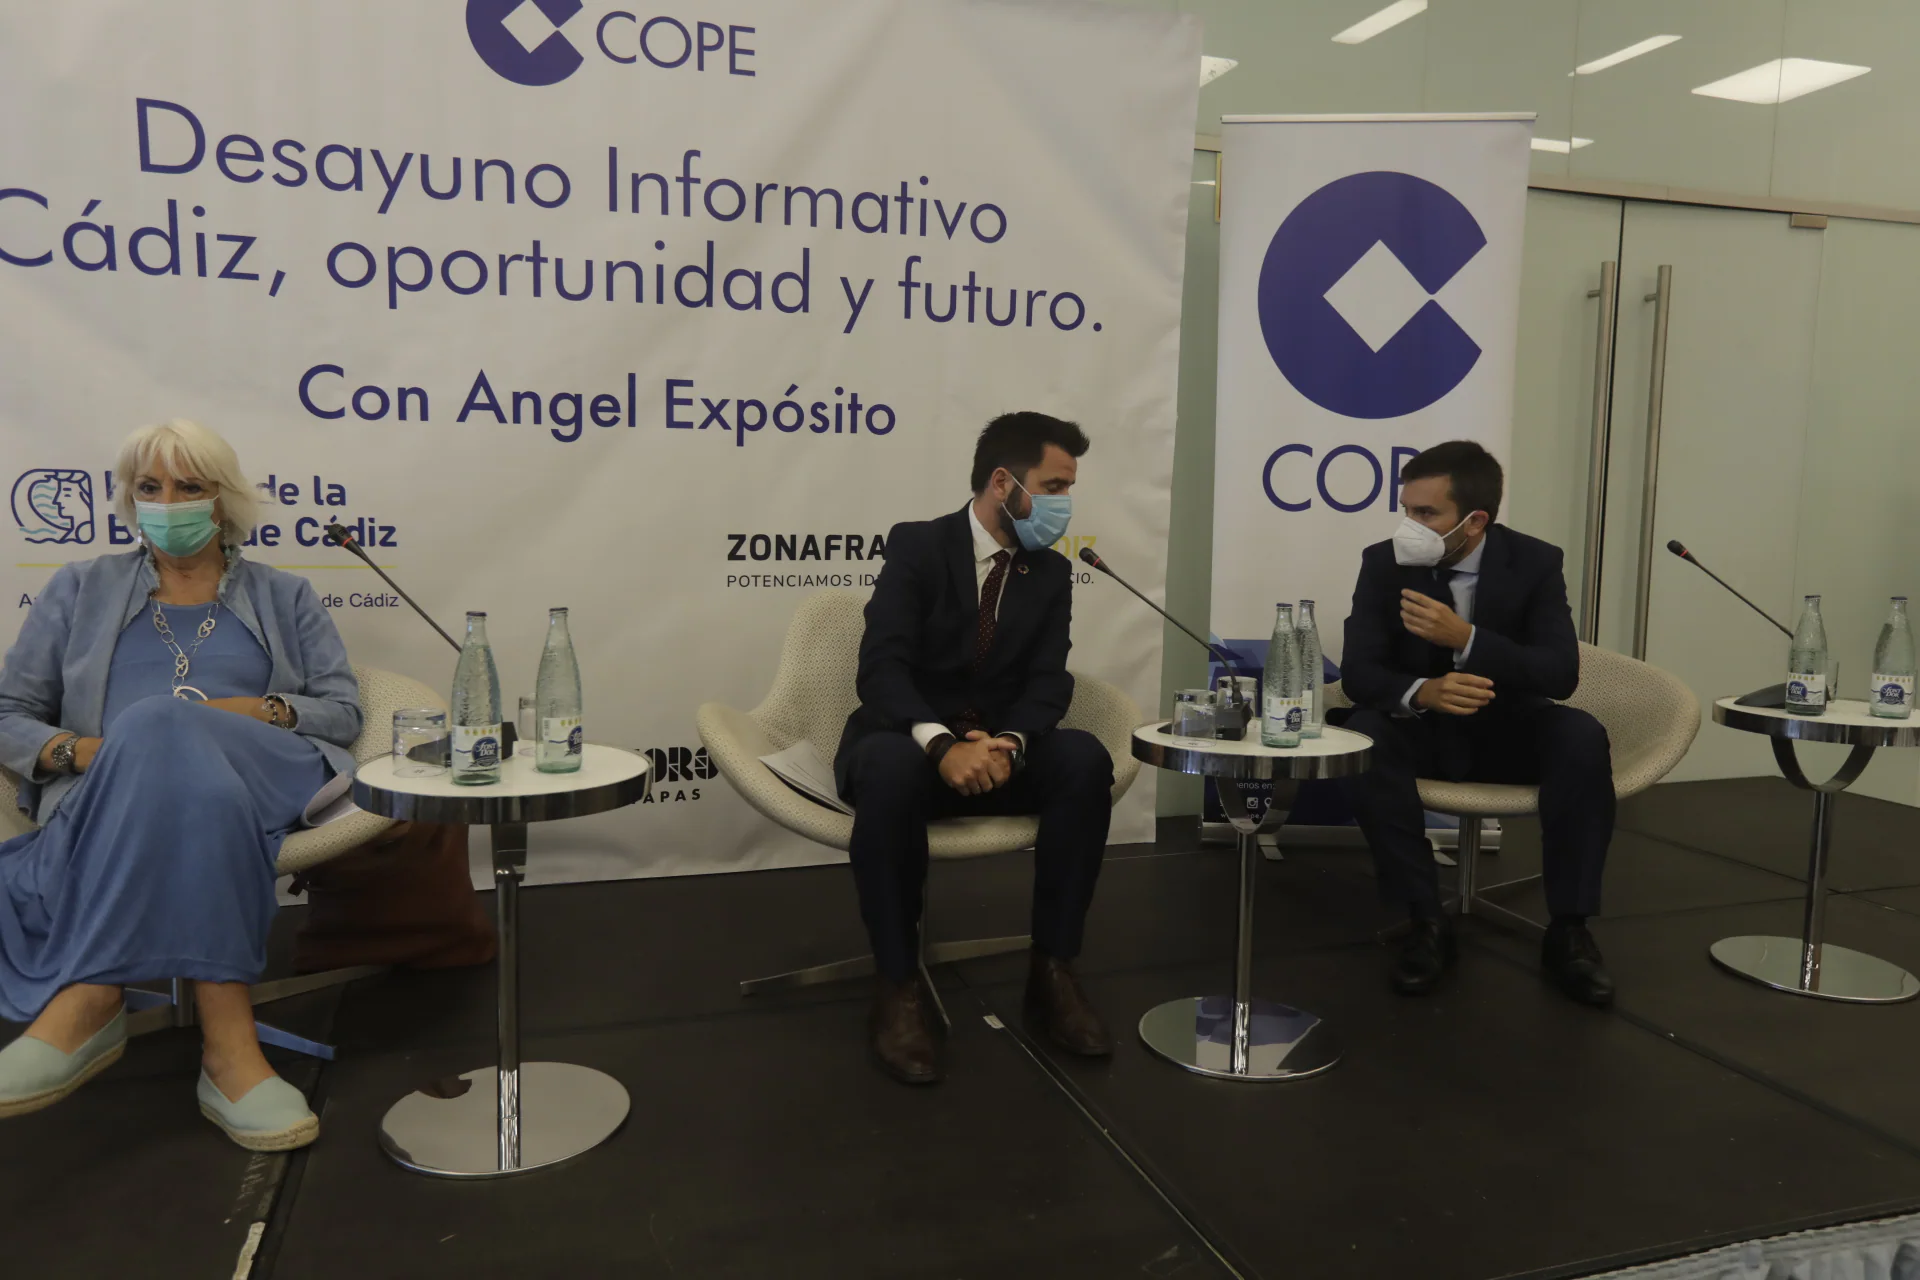 Cádiz busca oportunidades para avanzar con el esfuerzo de ciudadanos, empresas y administraciones